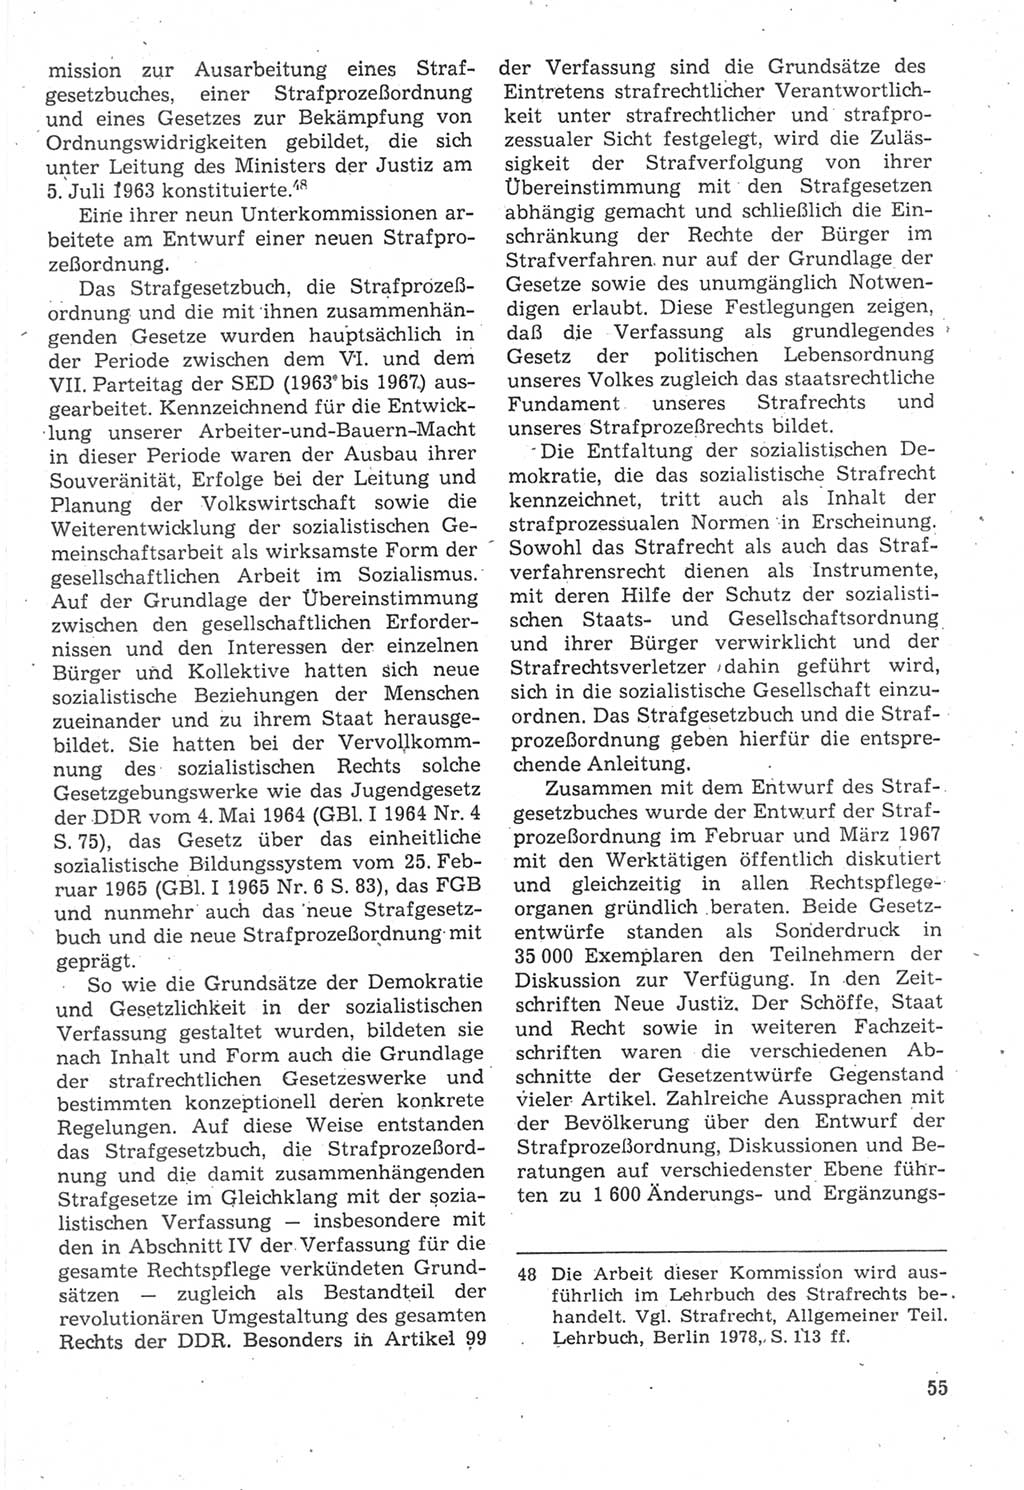 Strafverfahrensrecht [Deutsche Demokratische Republik (DDR)], Lehrbuch 1987, Seite 55 (Strafverf.-R. DDR Lb. 1987, S. 55)